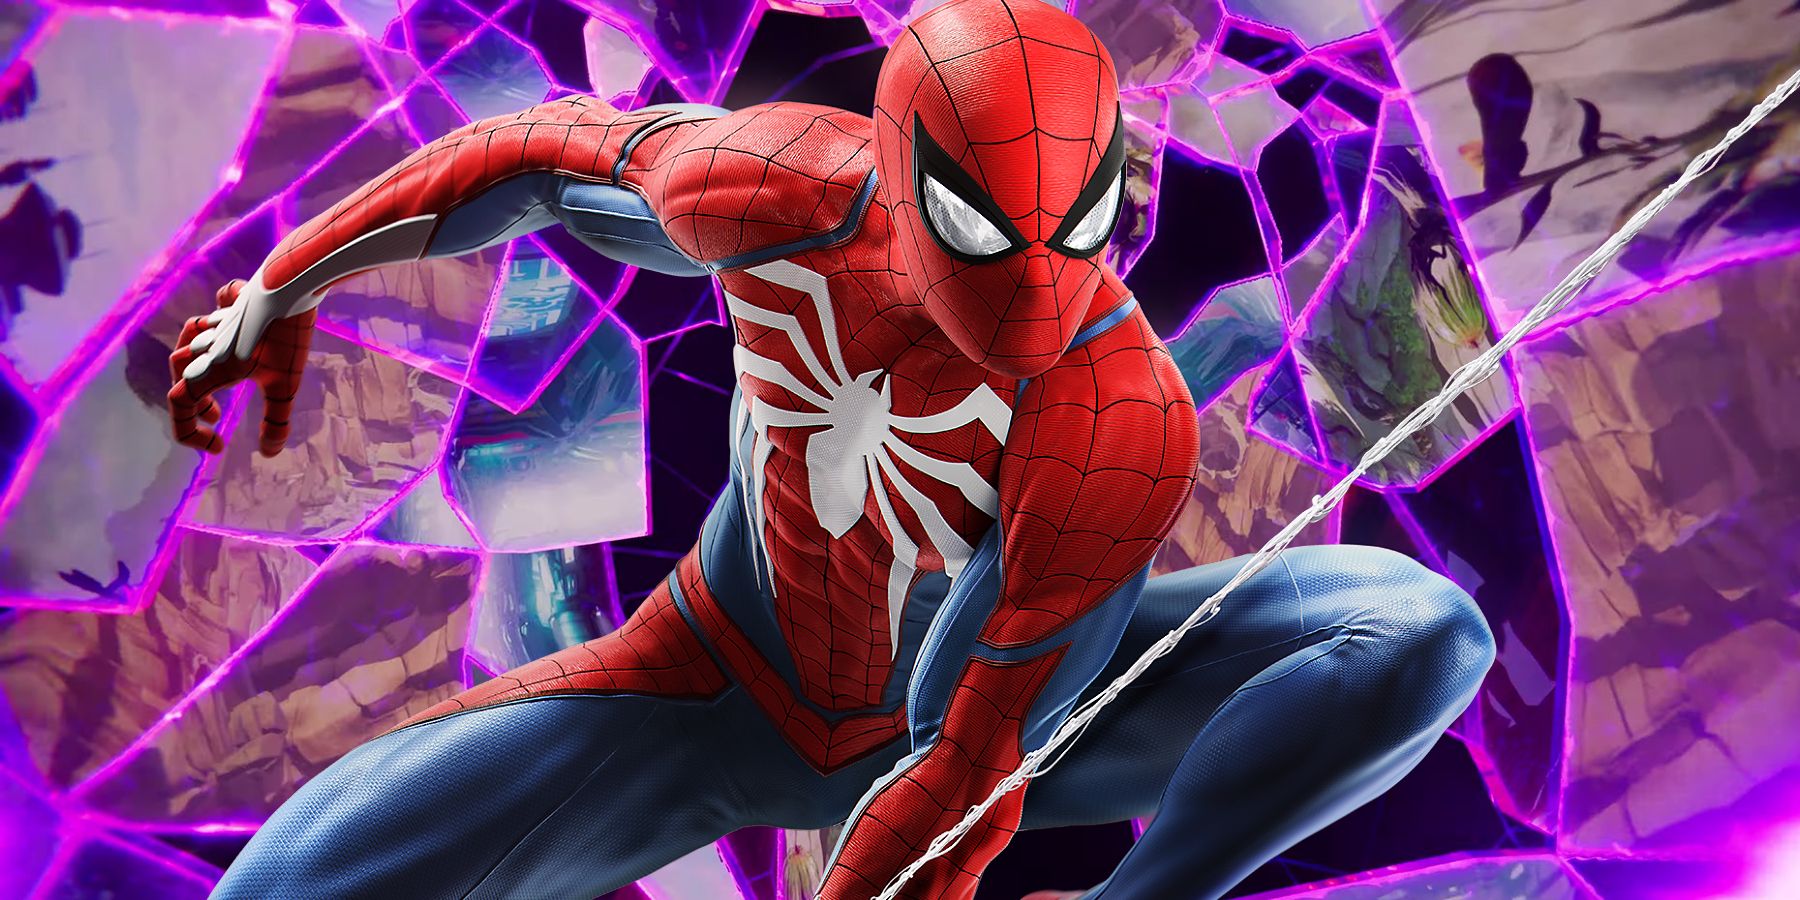 marvel's spider-man spider-verse ratchet and clank rift apart interdimensional